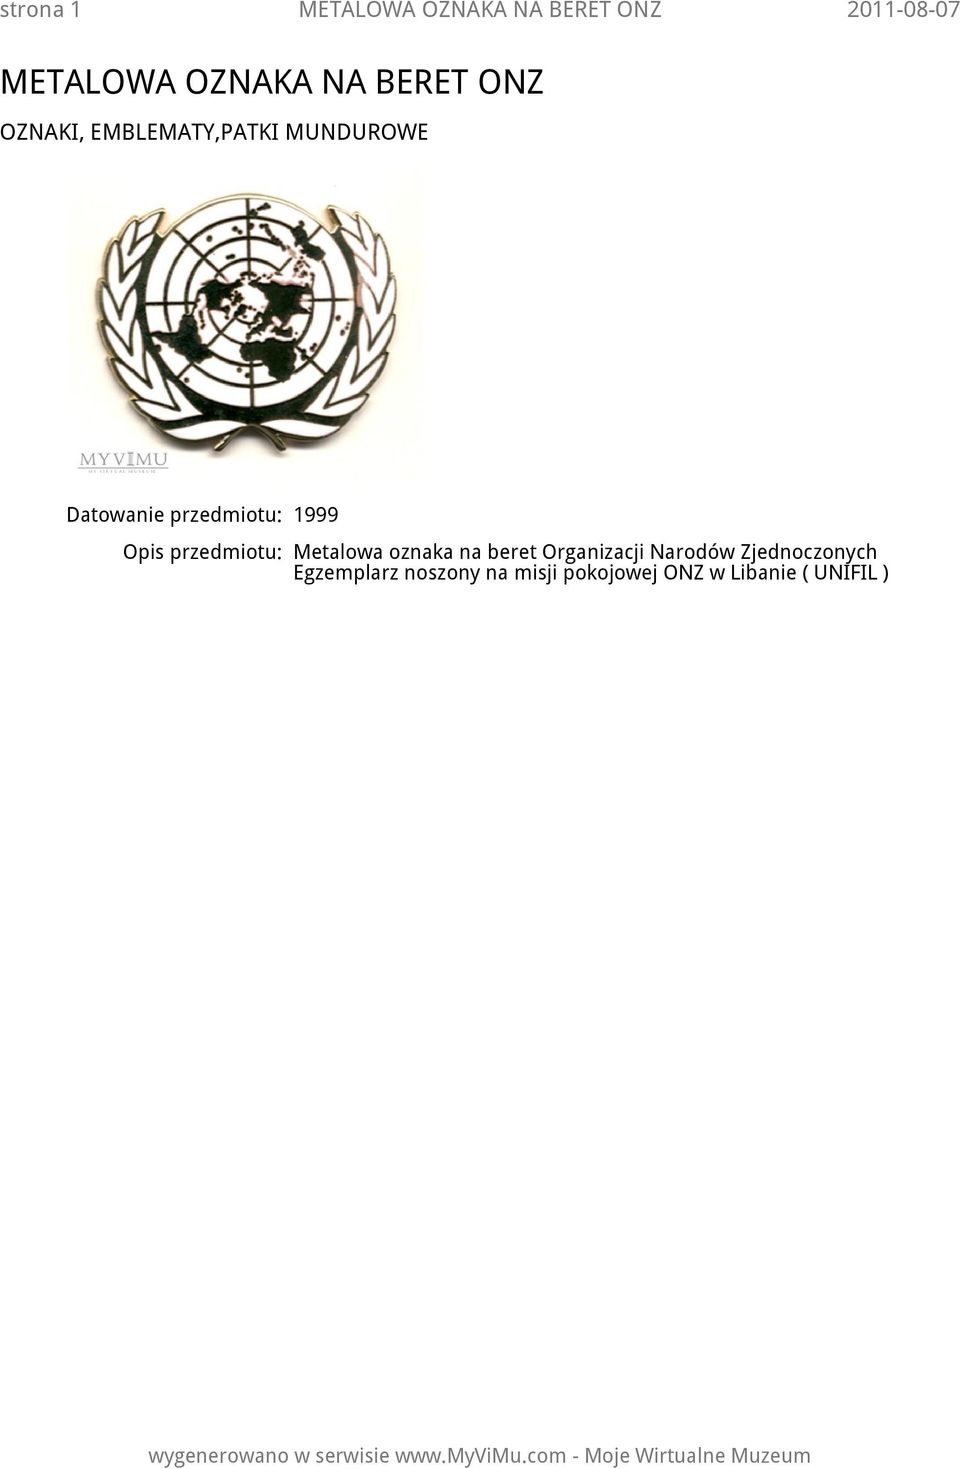 przedmiotu: Metalowa oznaka na beret Organizacji Narodów